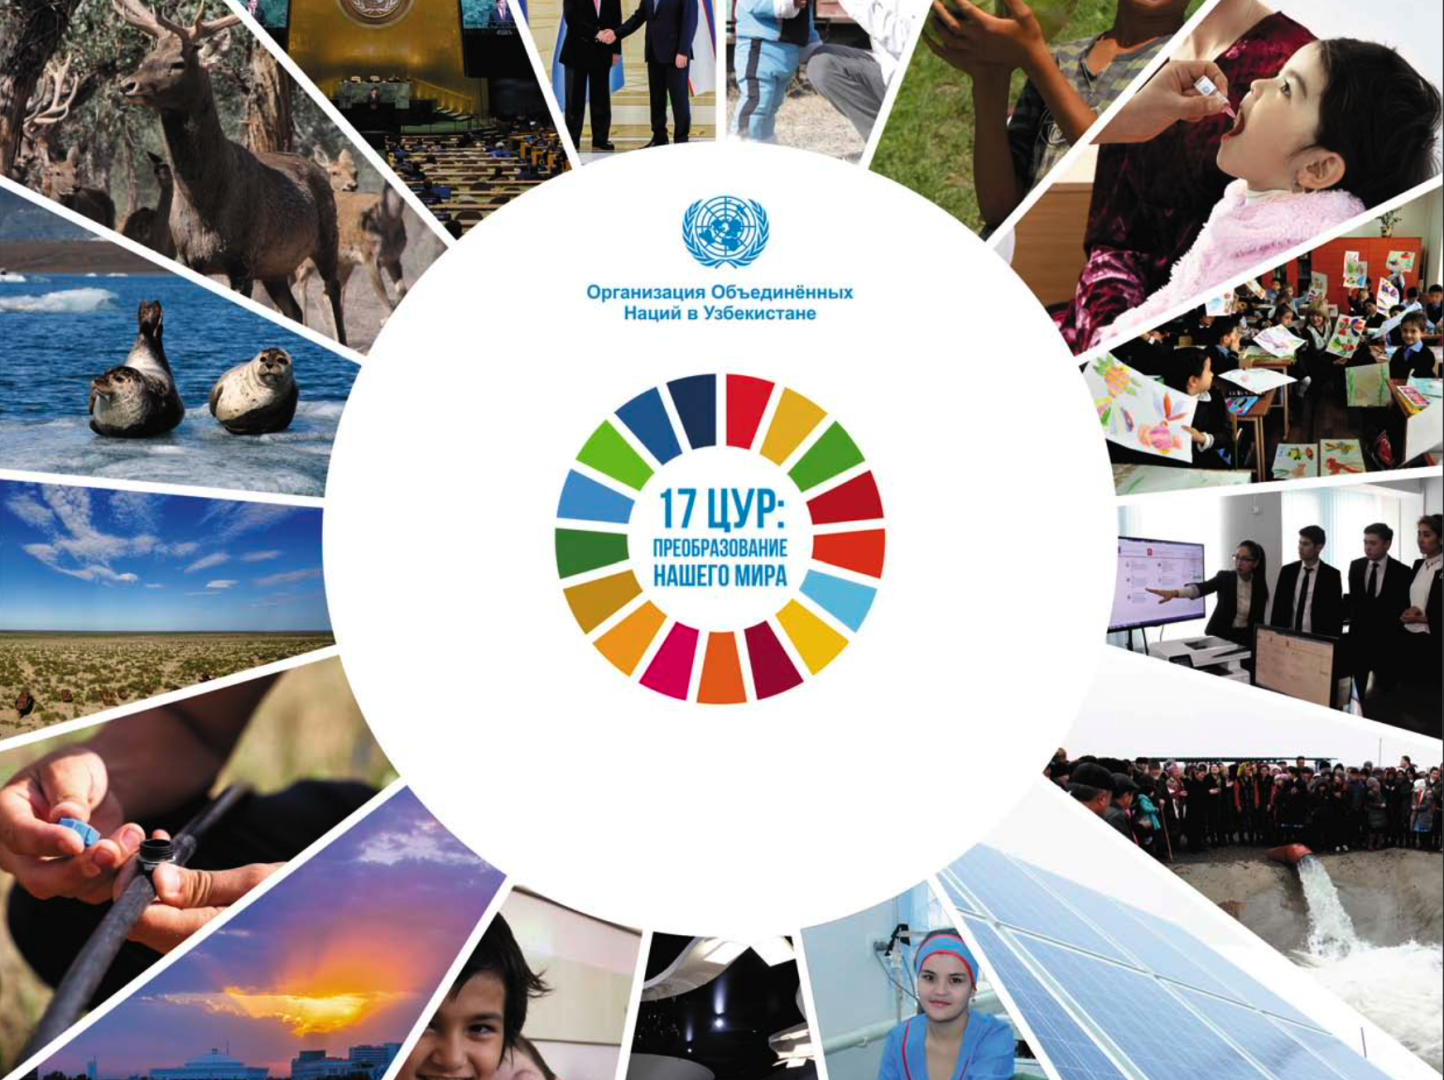 Целей оон в области устойчивого развития. 17 Целей устойчивого развития ООН. Цели устойчивого развития. Цели устойчивого развития ООН 2015-2030. Цели устойчивого развития ООН.